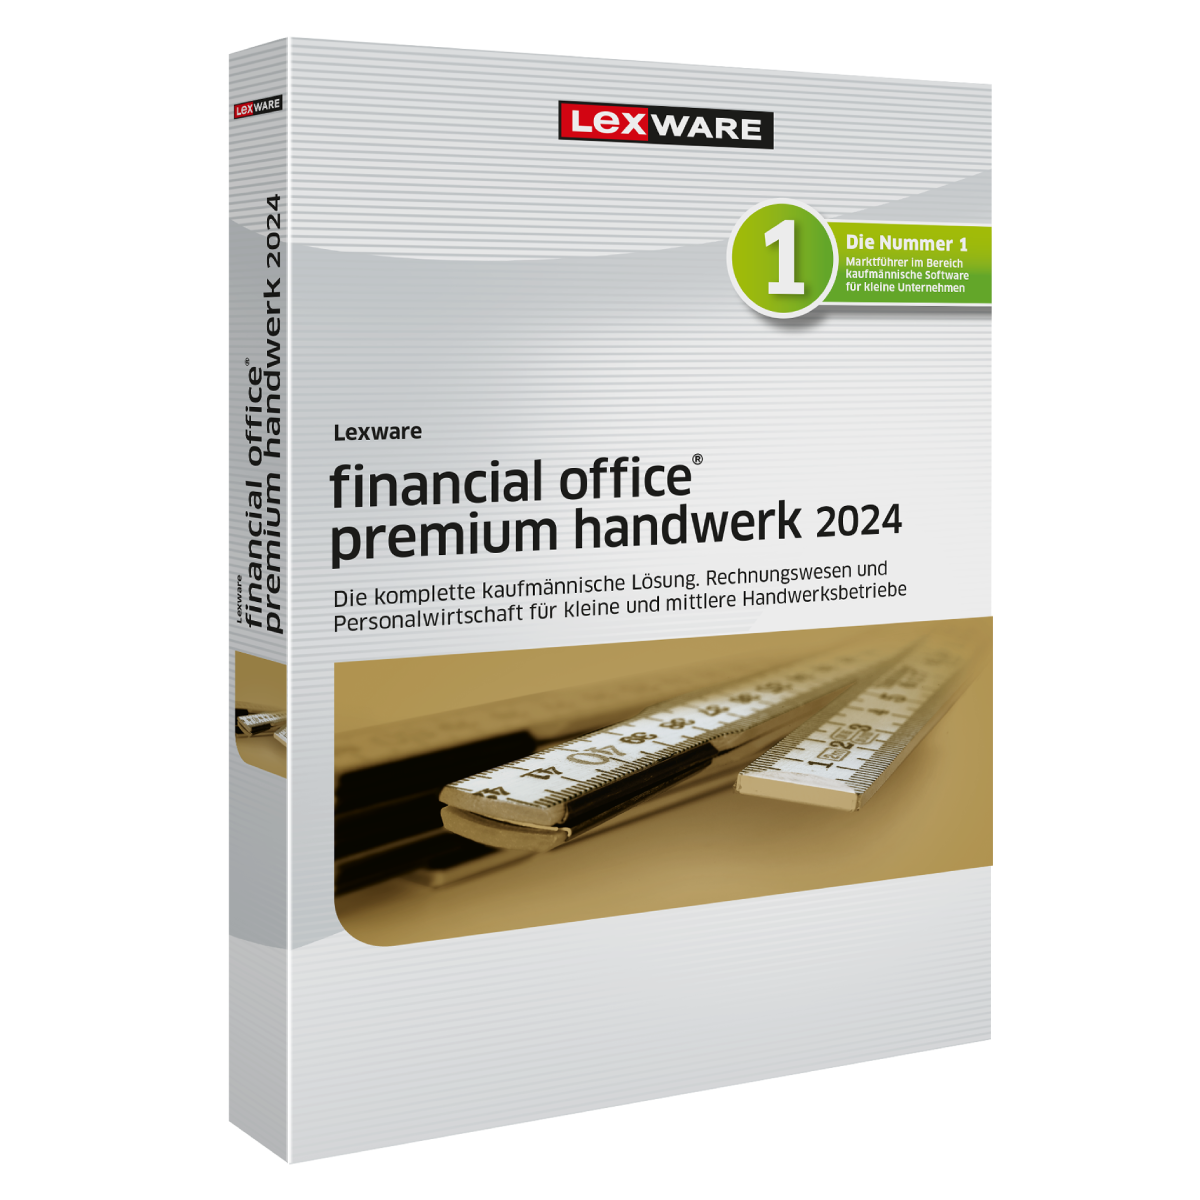 Lexware financial office premium handwerk 2024 - Abo von Lexware